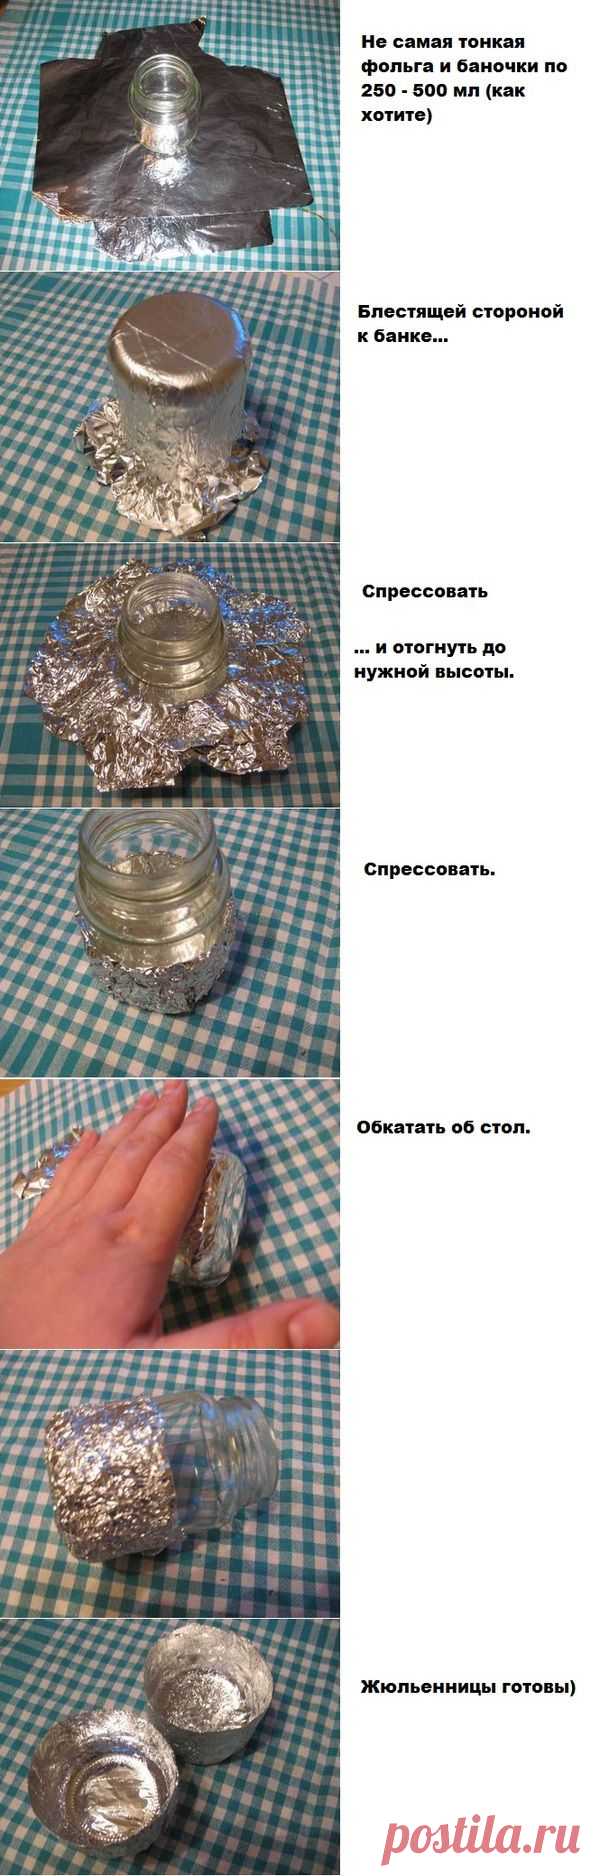 Посуда для жюльена своими руками. / Еда и напитки / Рецепты / Pinme.ru / Margarita Gromova